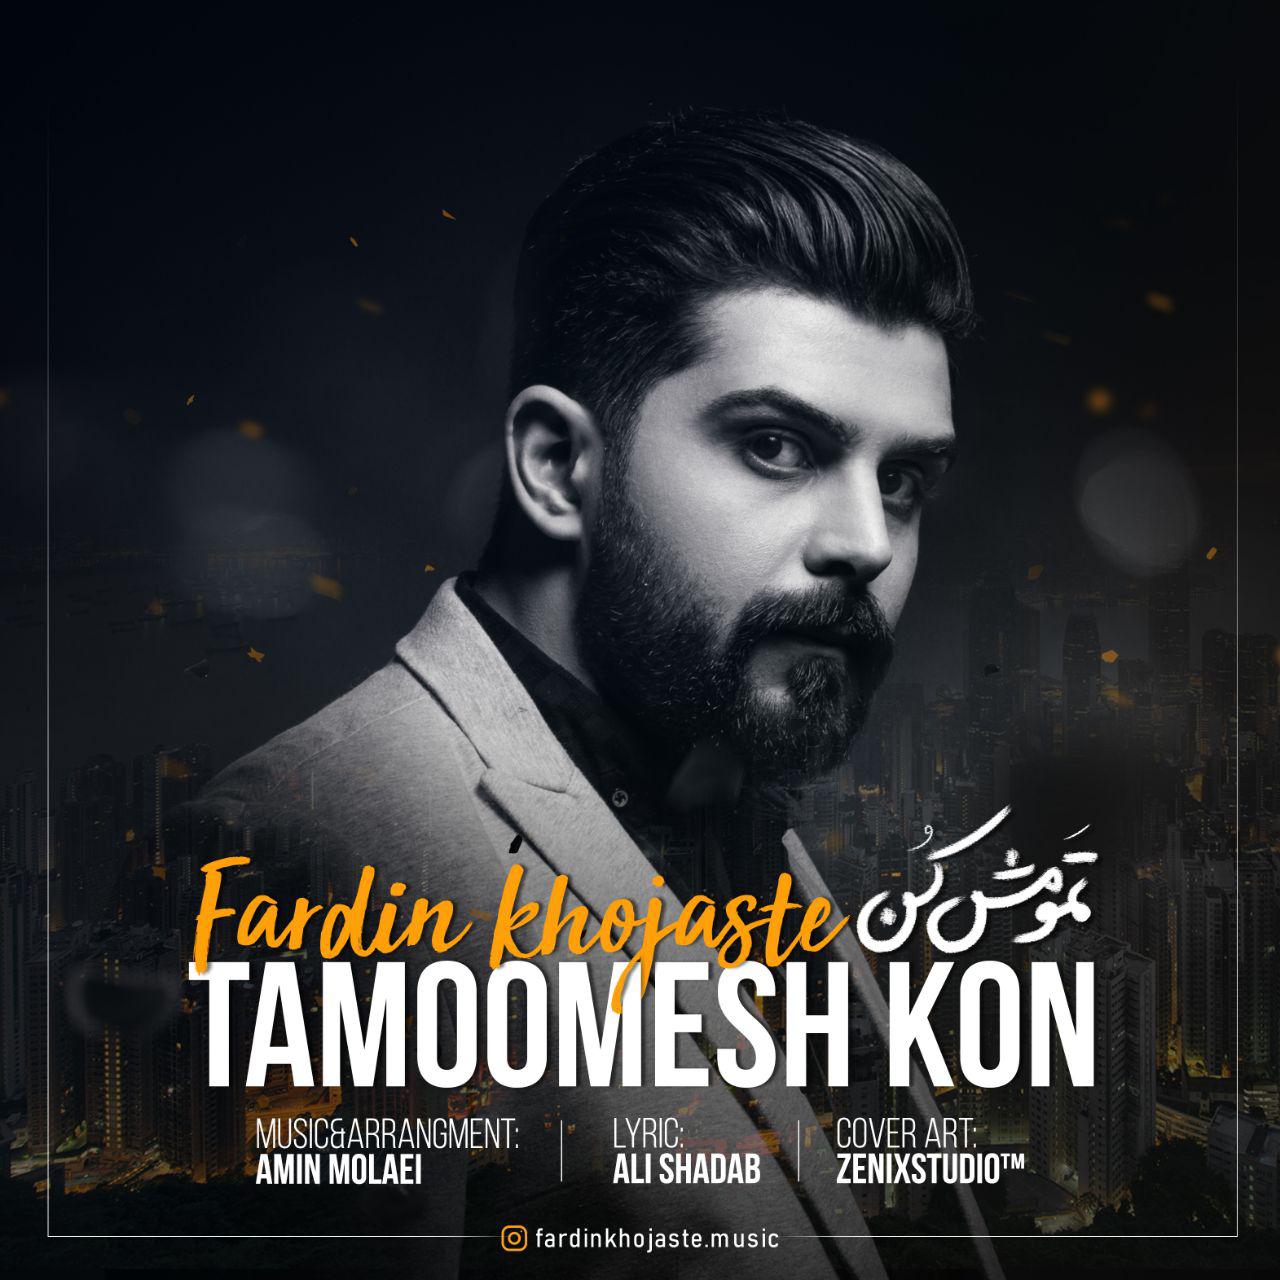  دانلود آهنگ جدید فردین خجسته - تمومش کن | Download New Music By Fardin Khojaste - Tamoomesh Kon